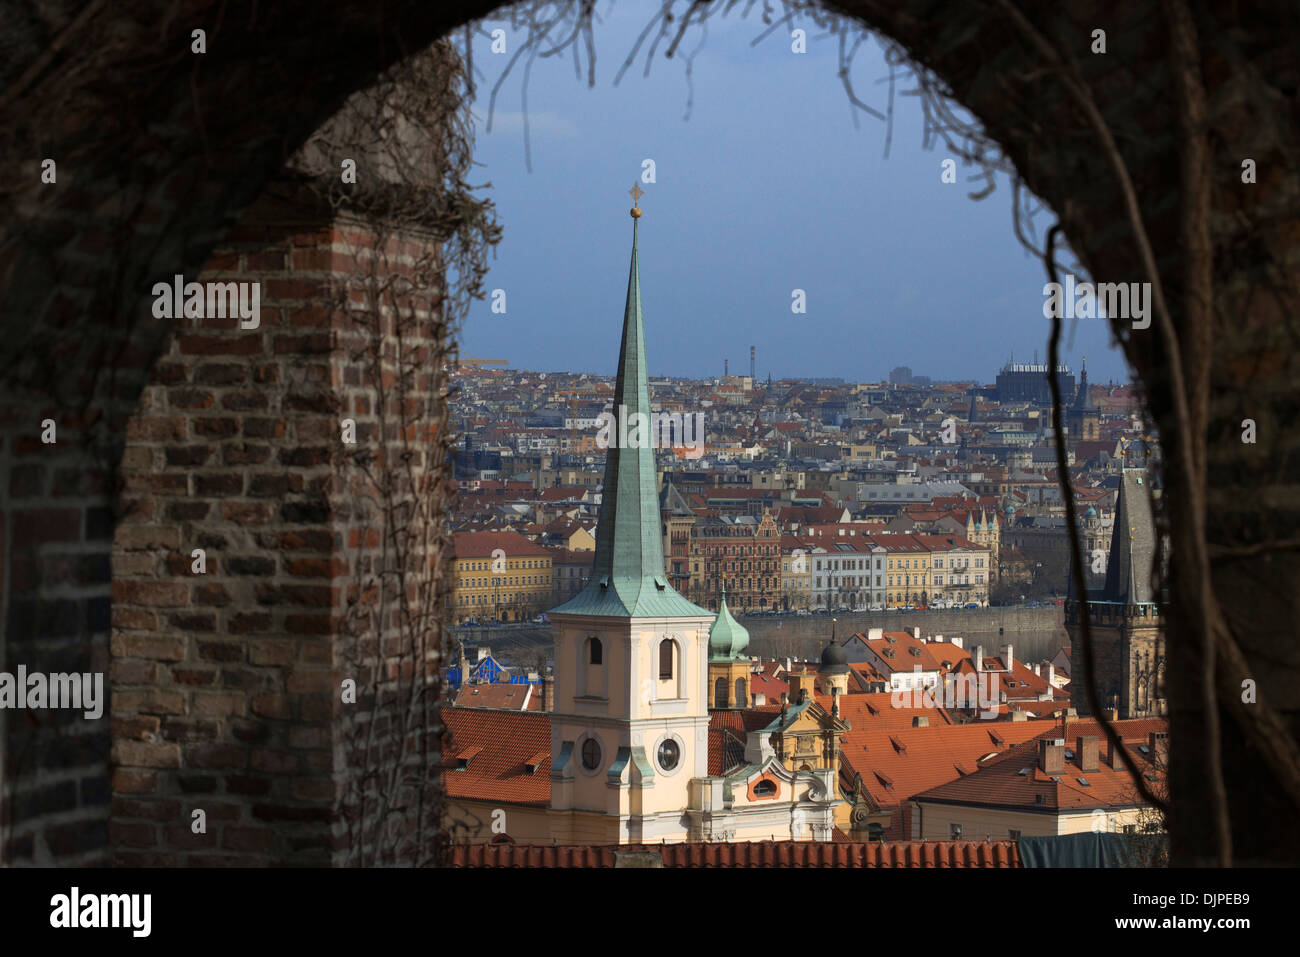 Viste da Mala Strana quartiere di Castello di Praga . La Mala Strana è situato ai piedi del Castello di Praga e termina in corrispondenza del Foto Stock